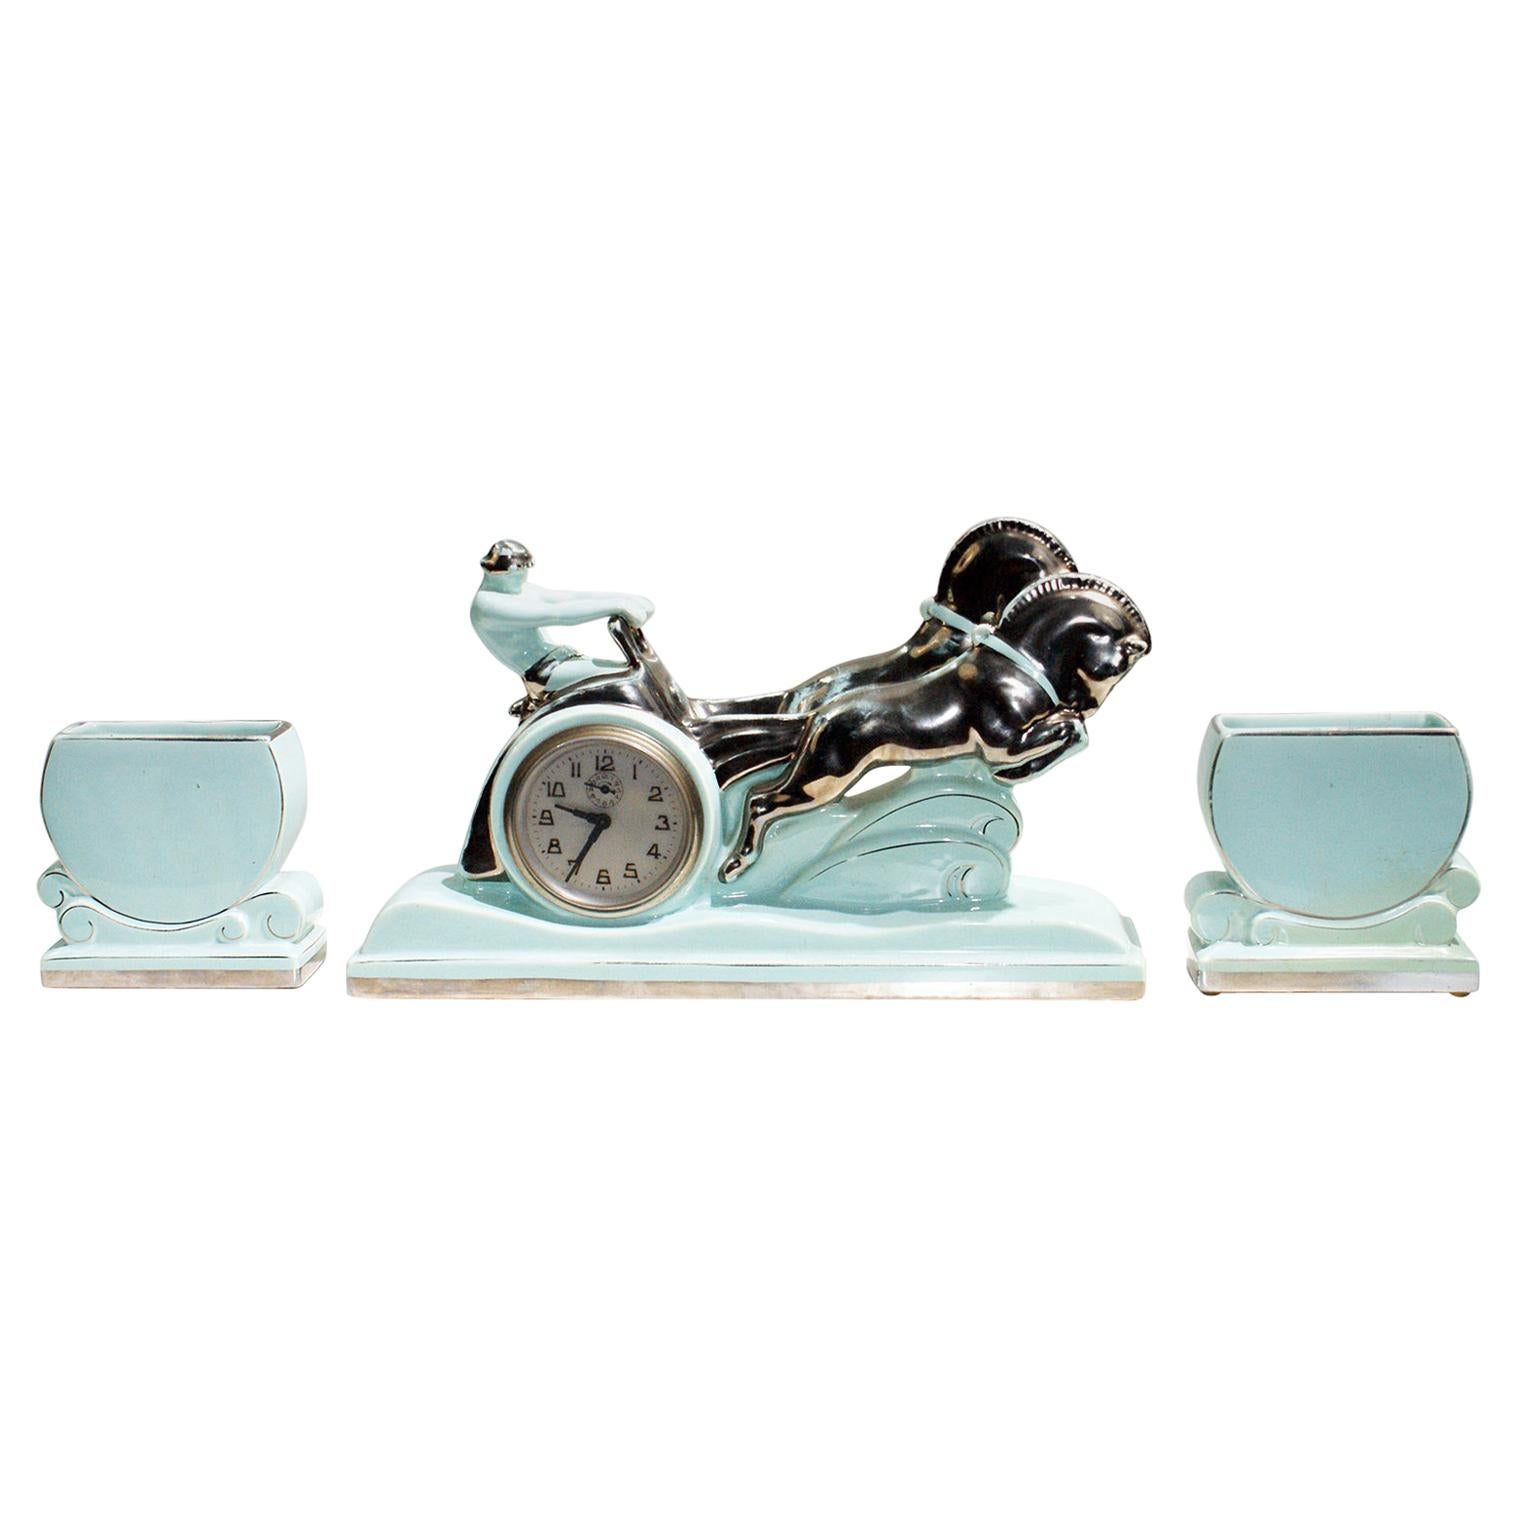 Stunning Art Deco Enamel Ceramic Sculpture “Ben Hur Horse Racing Chariot" For Sale